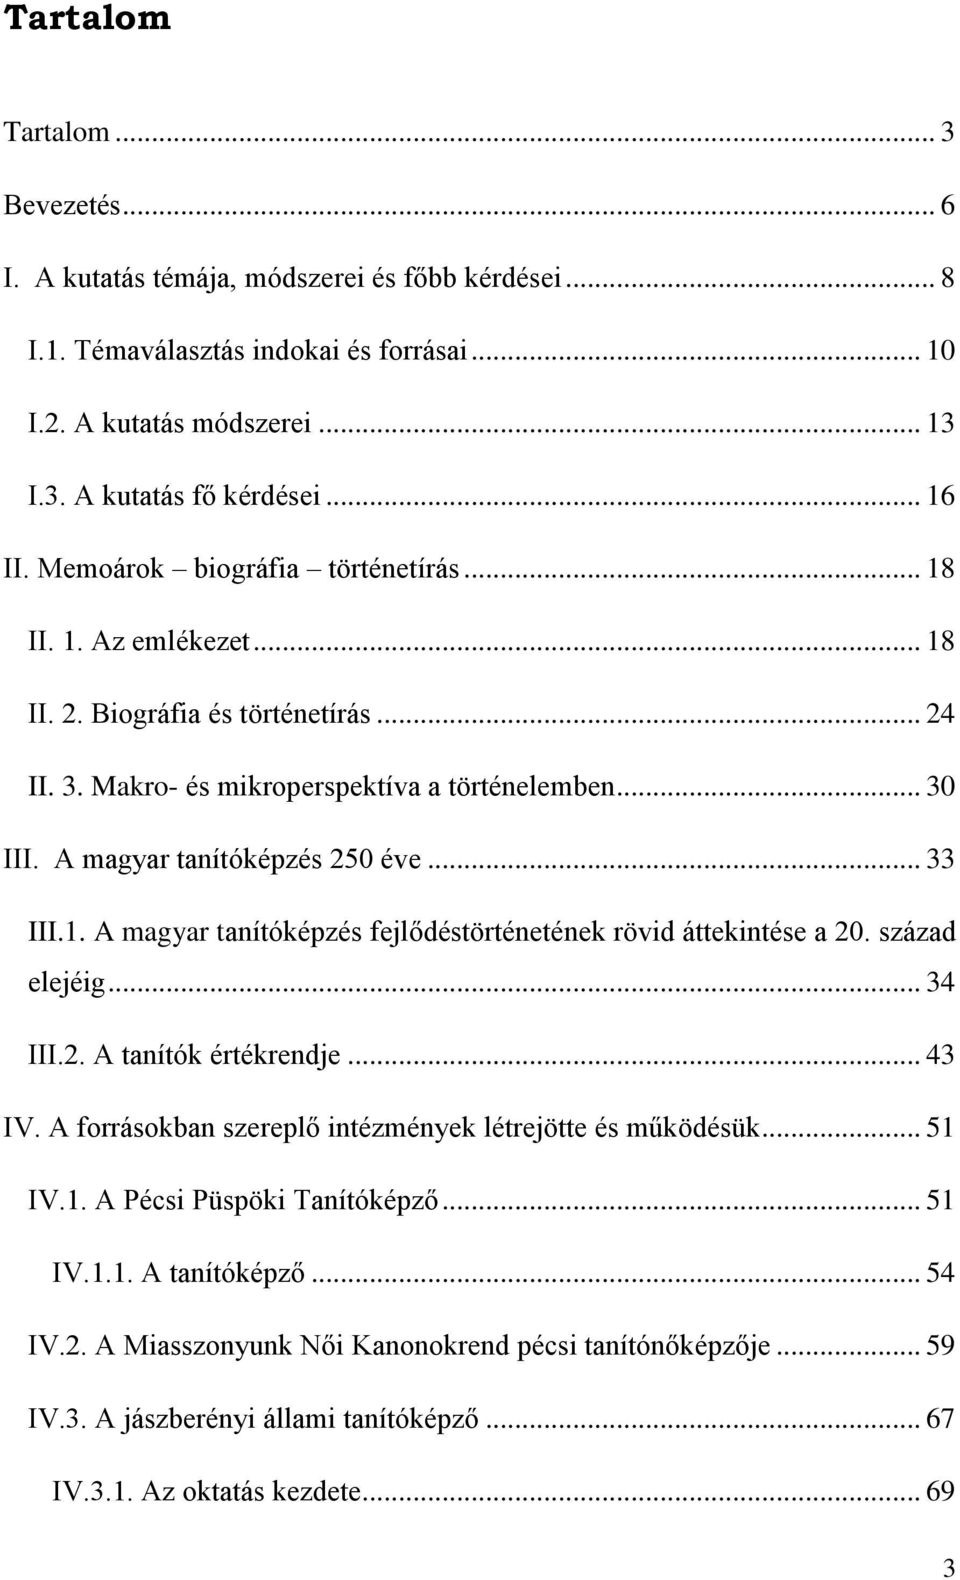 A magyar tanítóképzés 250 éve... 33 III.1. A magyar tanítóképzés fejlődéstörténetének rövid áttekintése a 20. század elejéig... 34 III.2. A tanítók értékrendje... 43 IV.